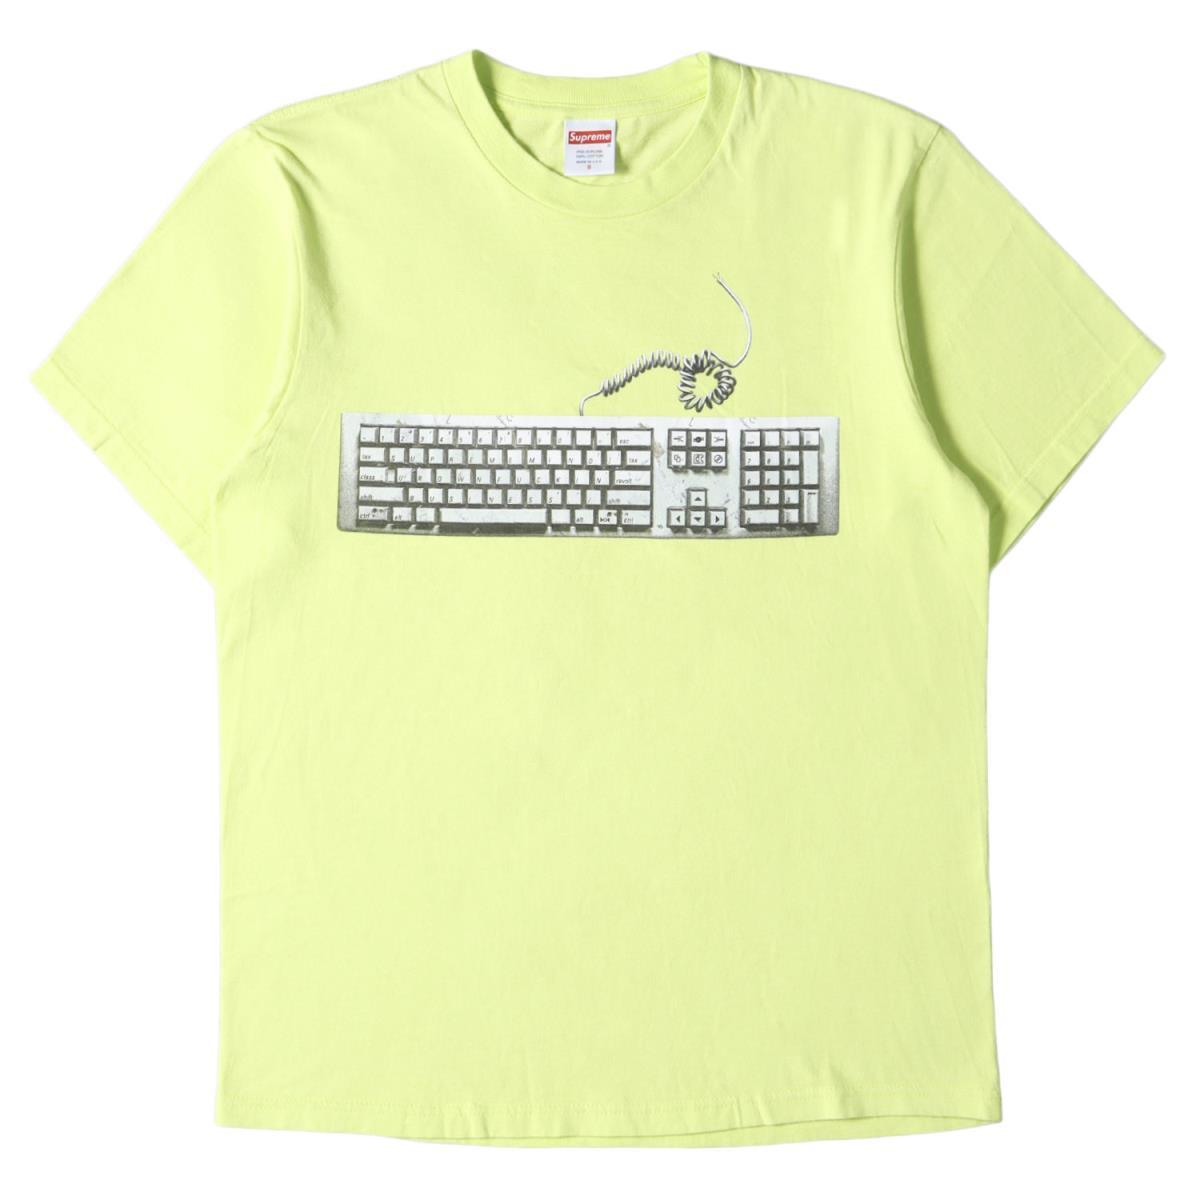 円高還元 Supreme シュプリーム Tシャツ キーボード グラフィック Tシャツ Keyboard Tee 19SS ネオングリーン S Sサイズ以下